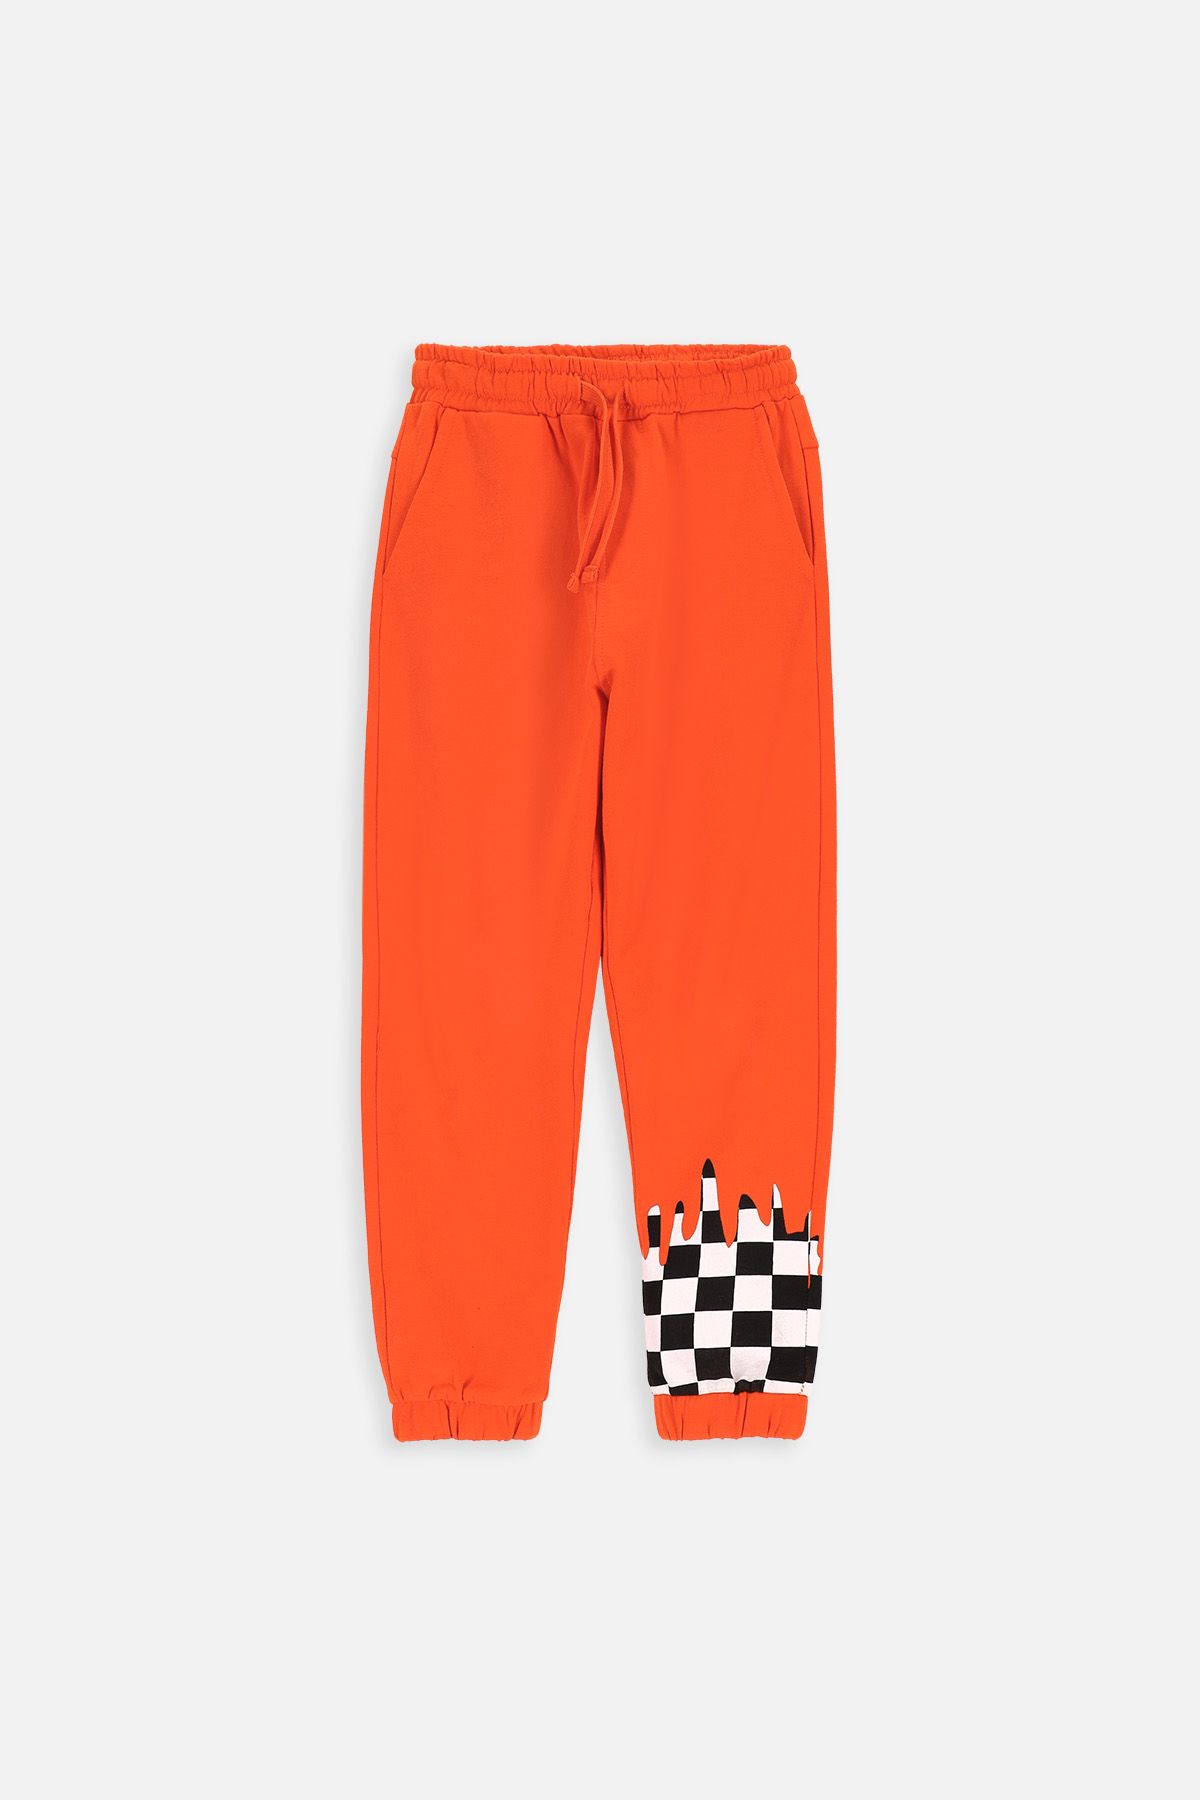 Spodnie dresowe pomarańczowe z nadrukiem na nogawce o fasonie SLIM 2222450